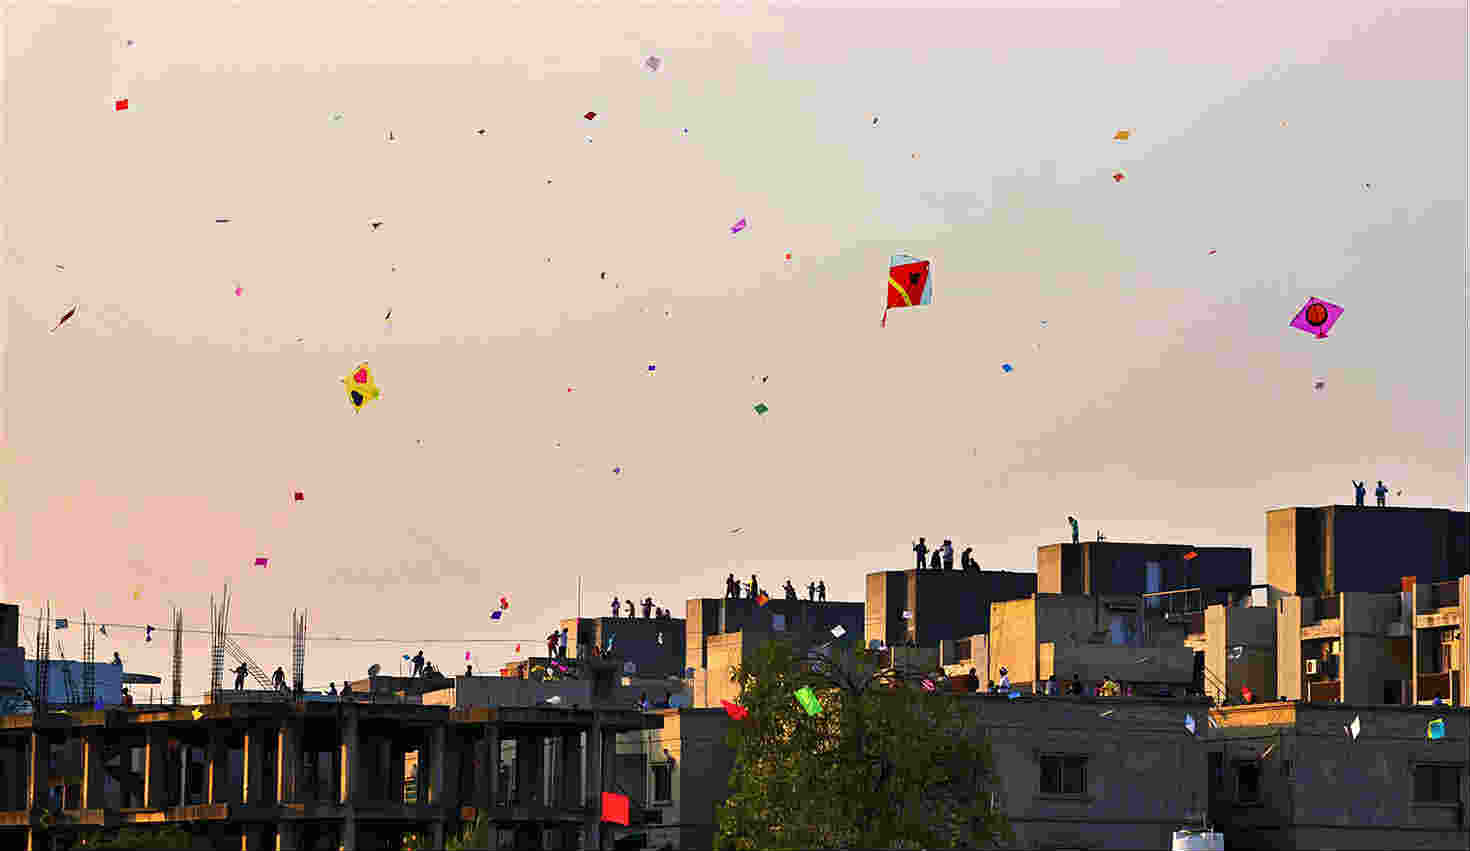 Kite festival in India